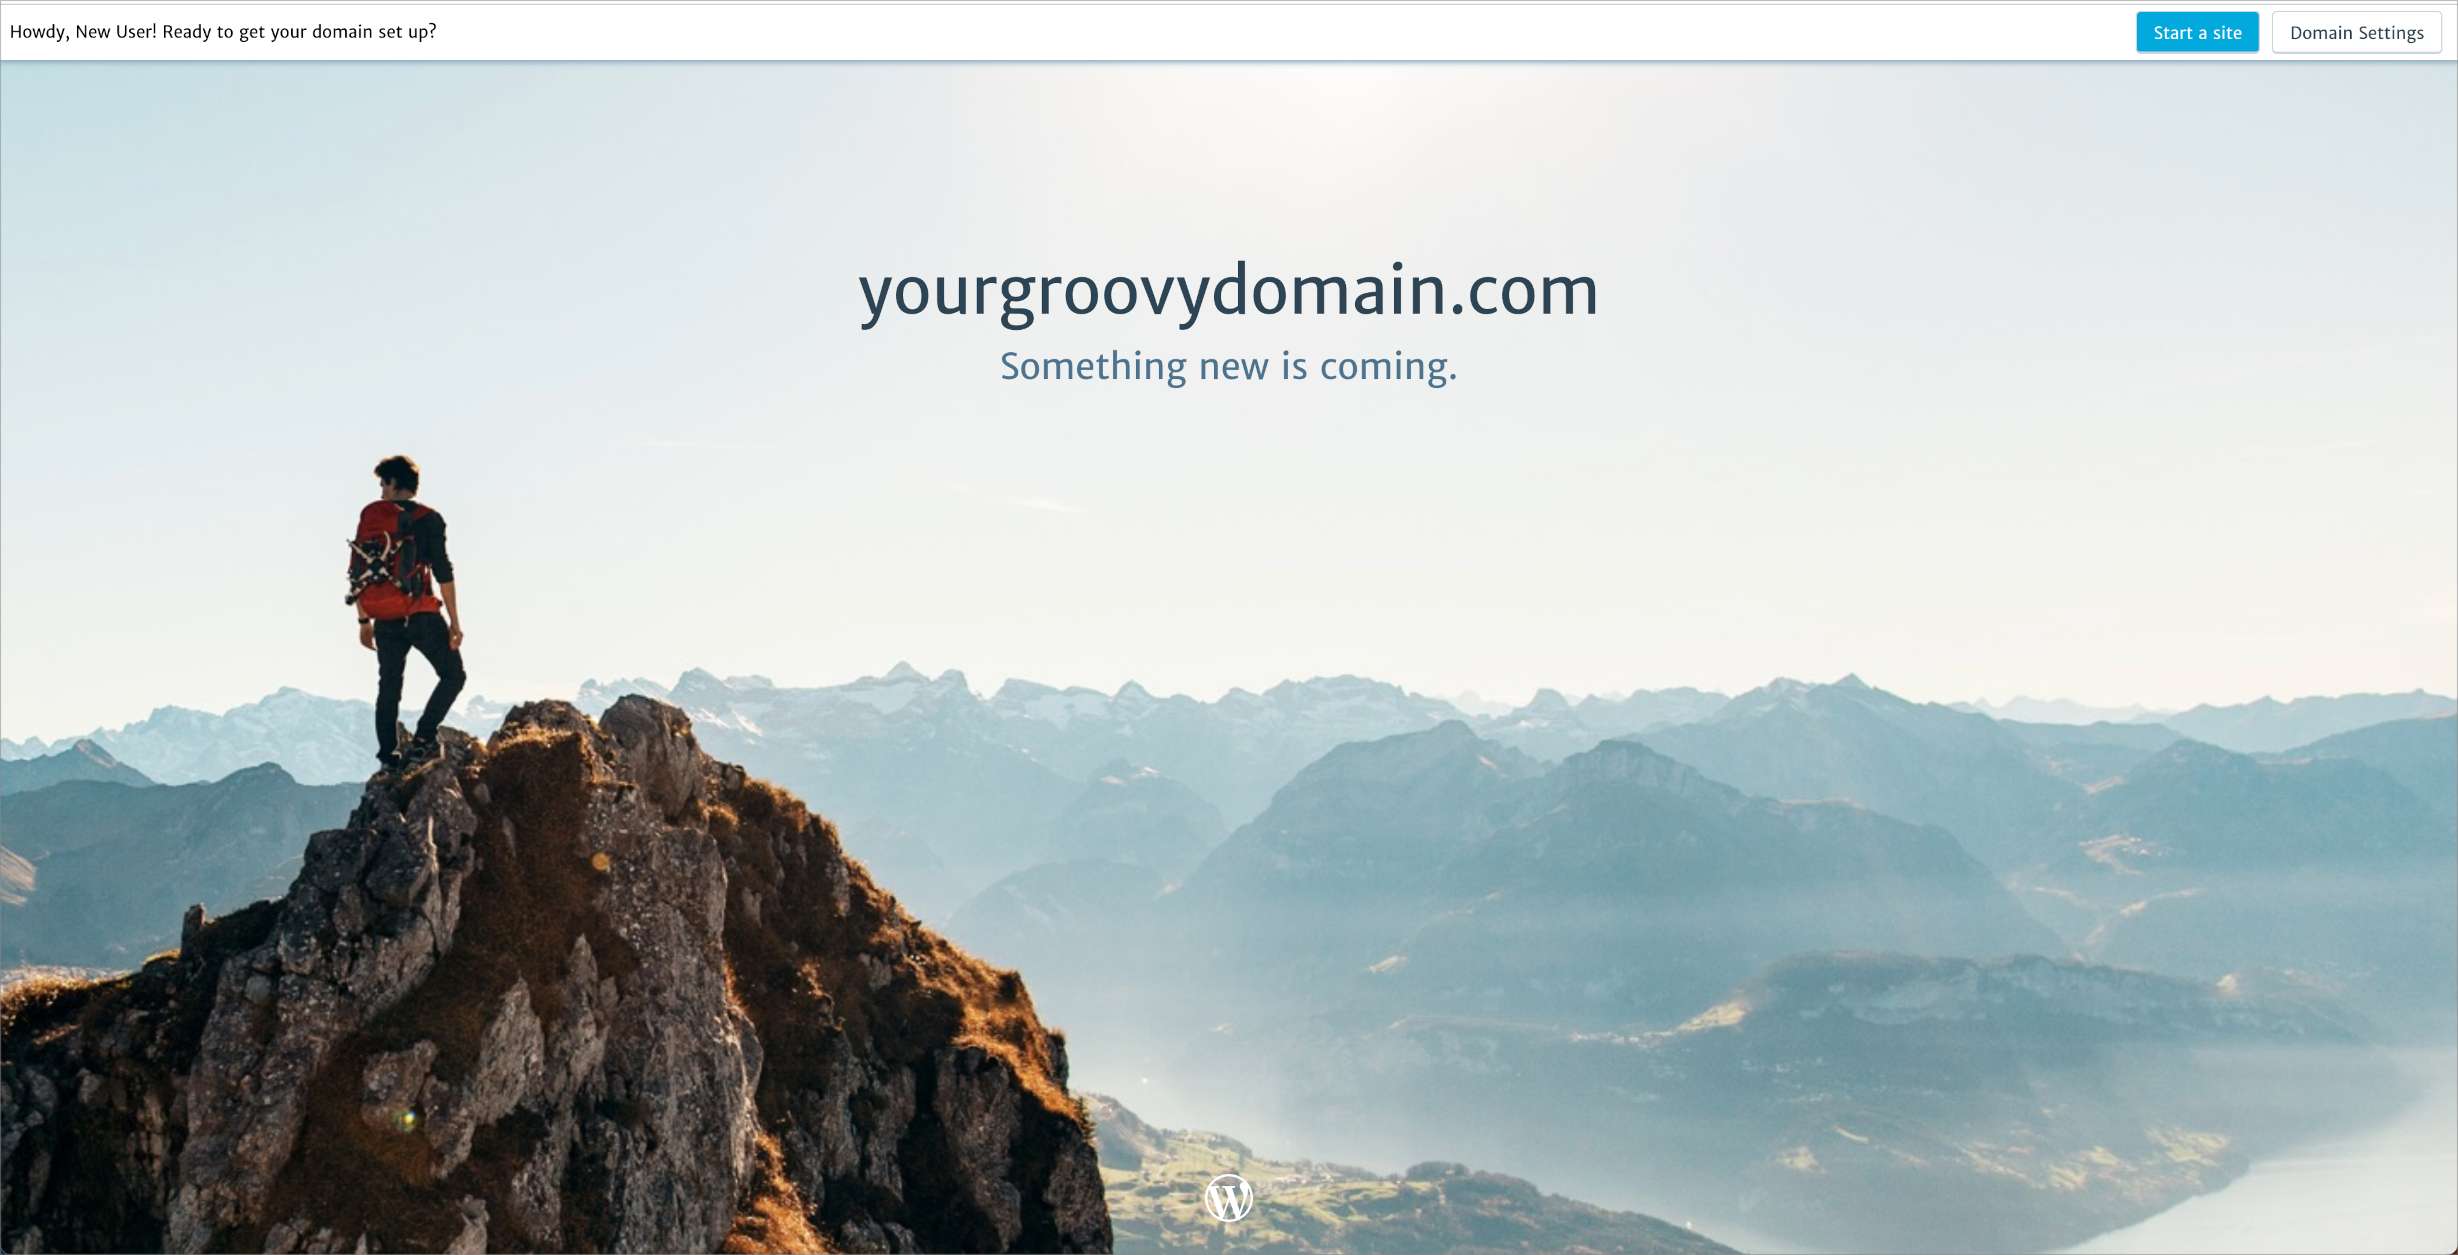 Целевая страница домена с указанием доменного имени и текста "somehting new is coming" (скоро здесь будет что-то новое).